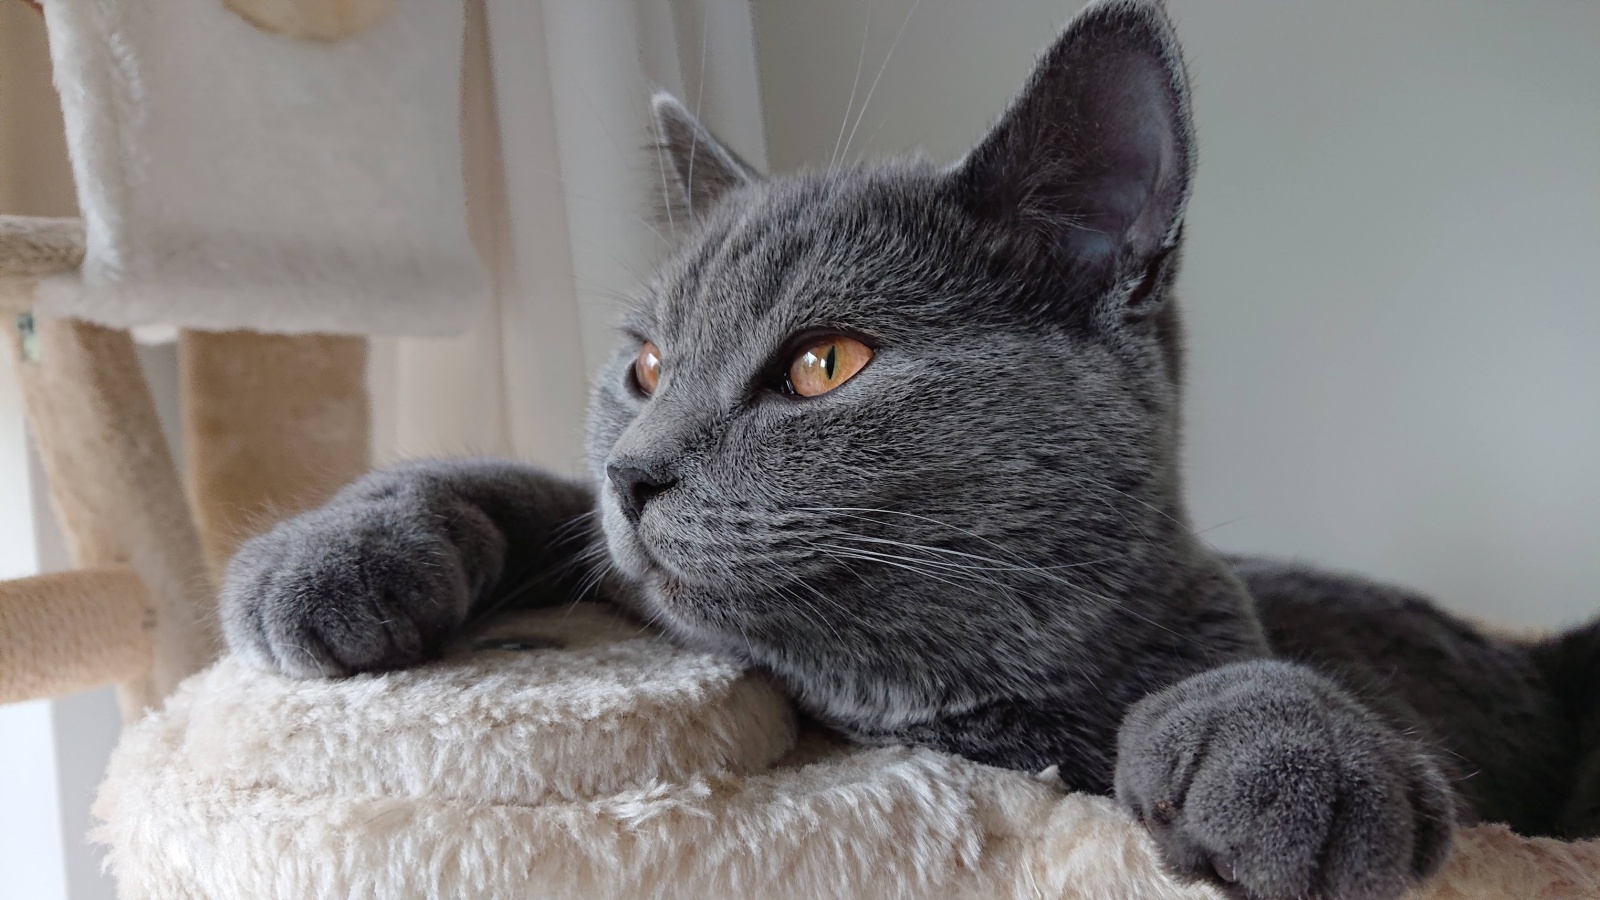 Эскобар - британский голубой кот, который своё имя оправдывает полностью. Способен находить лазейки и убегать практически из любых ситуаций.